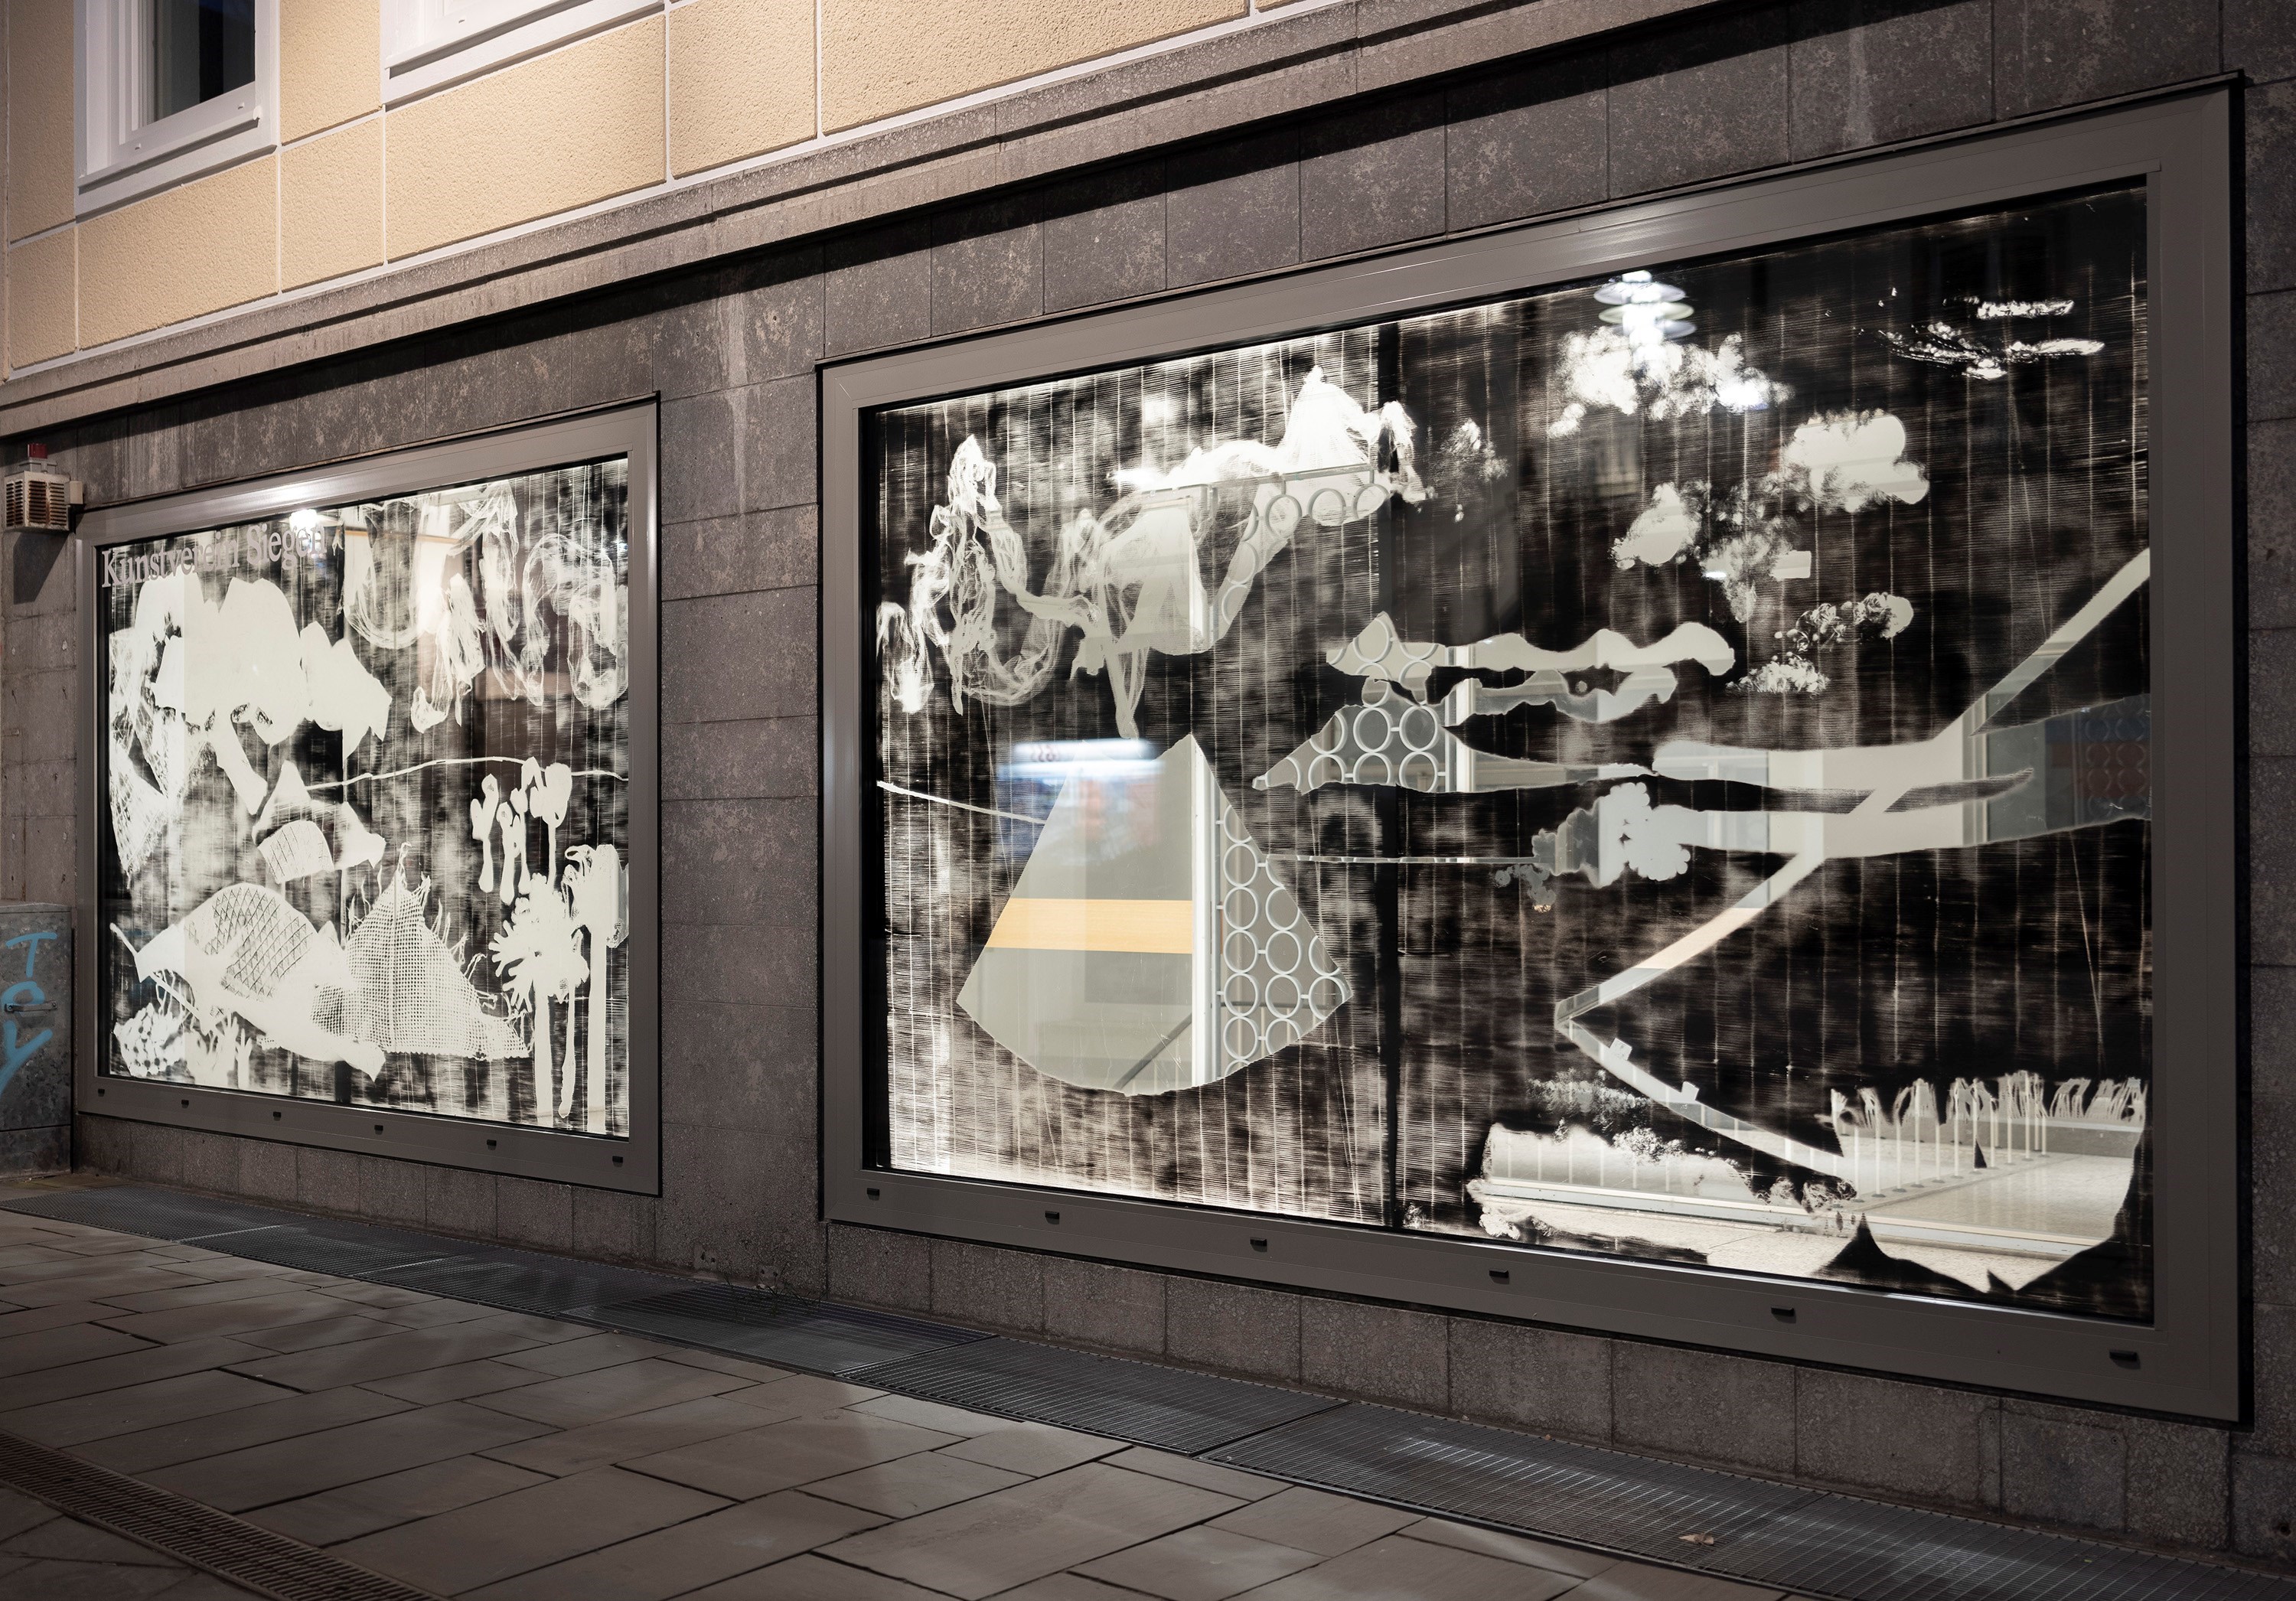 Fenster, 260 cm x 350 cm each, chalkspray on glas, 2021<br />Installation view Kunstverein Siegen, 2021<br />Photography: Heinrich Holtgreve<br />